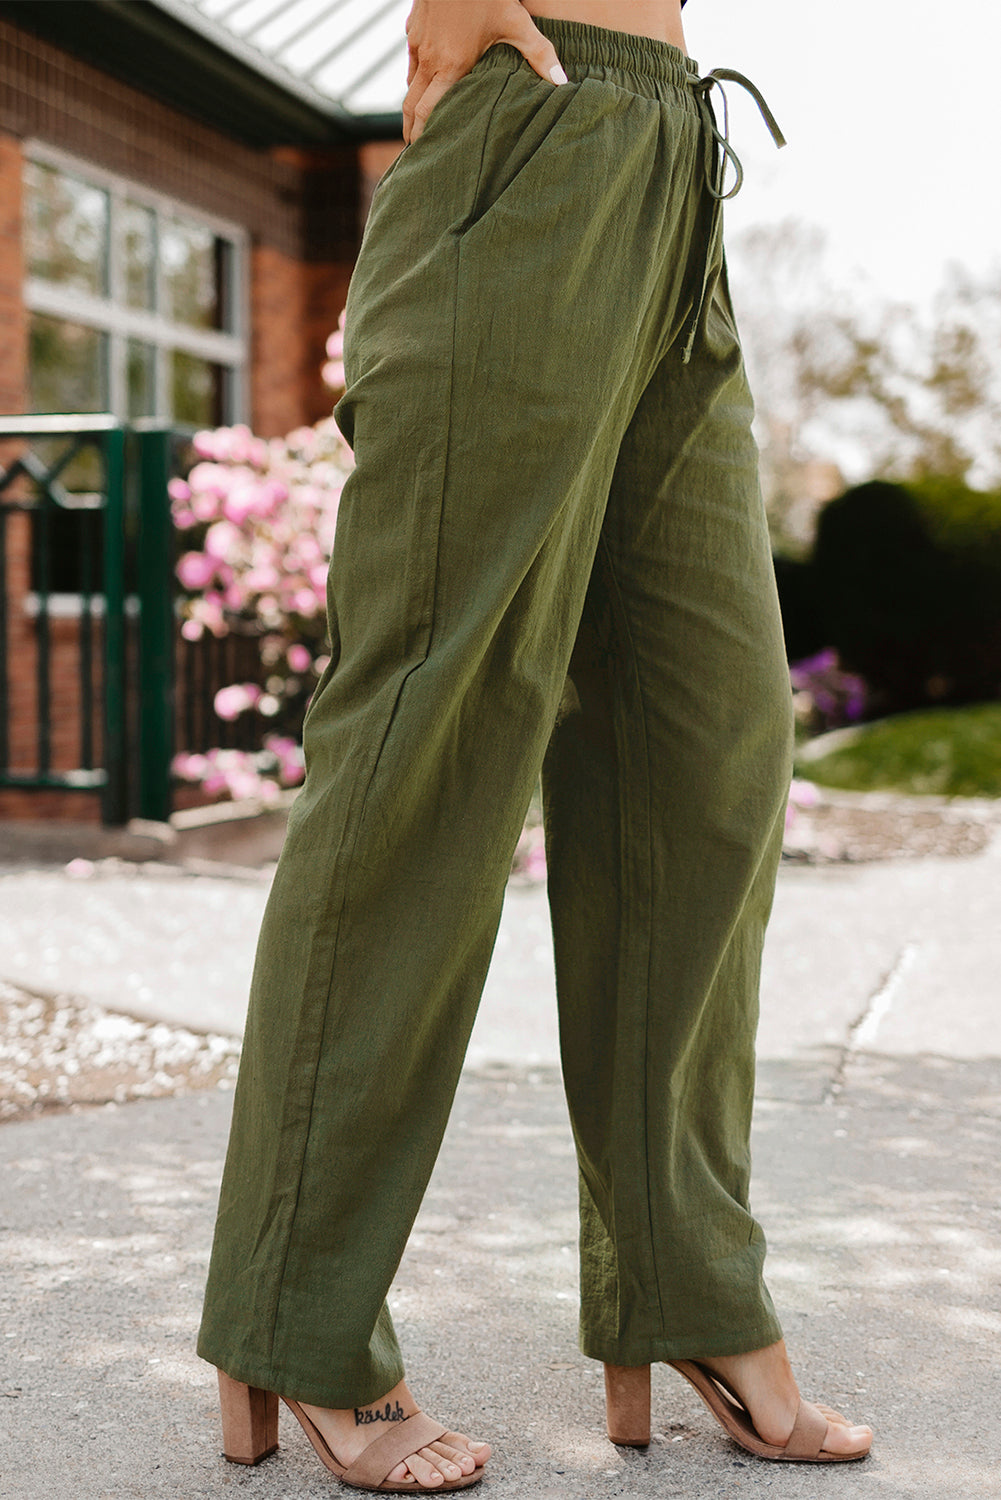 Grüne Hose mit Kordelzug, elastischen Taillentaschen, langen, geraden Beinen